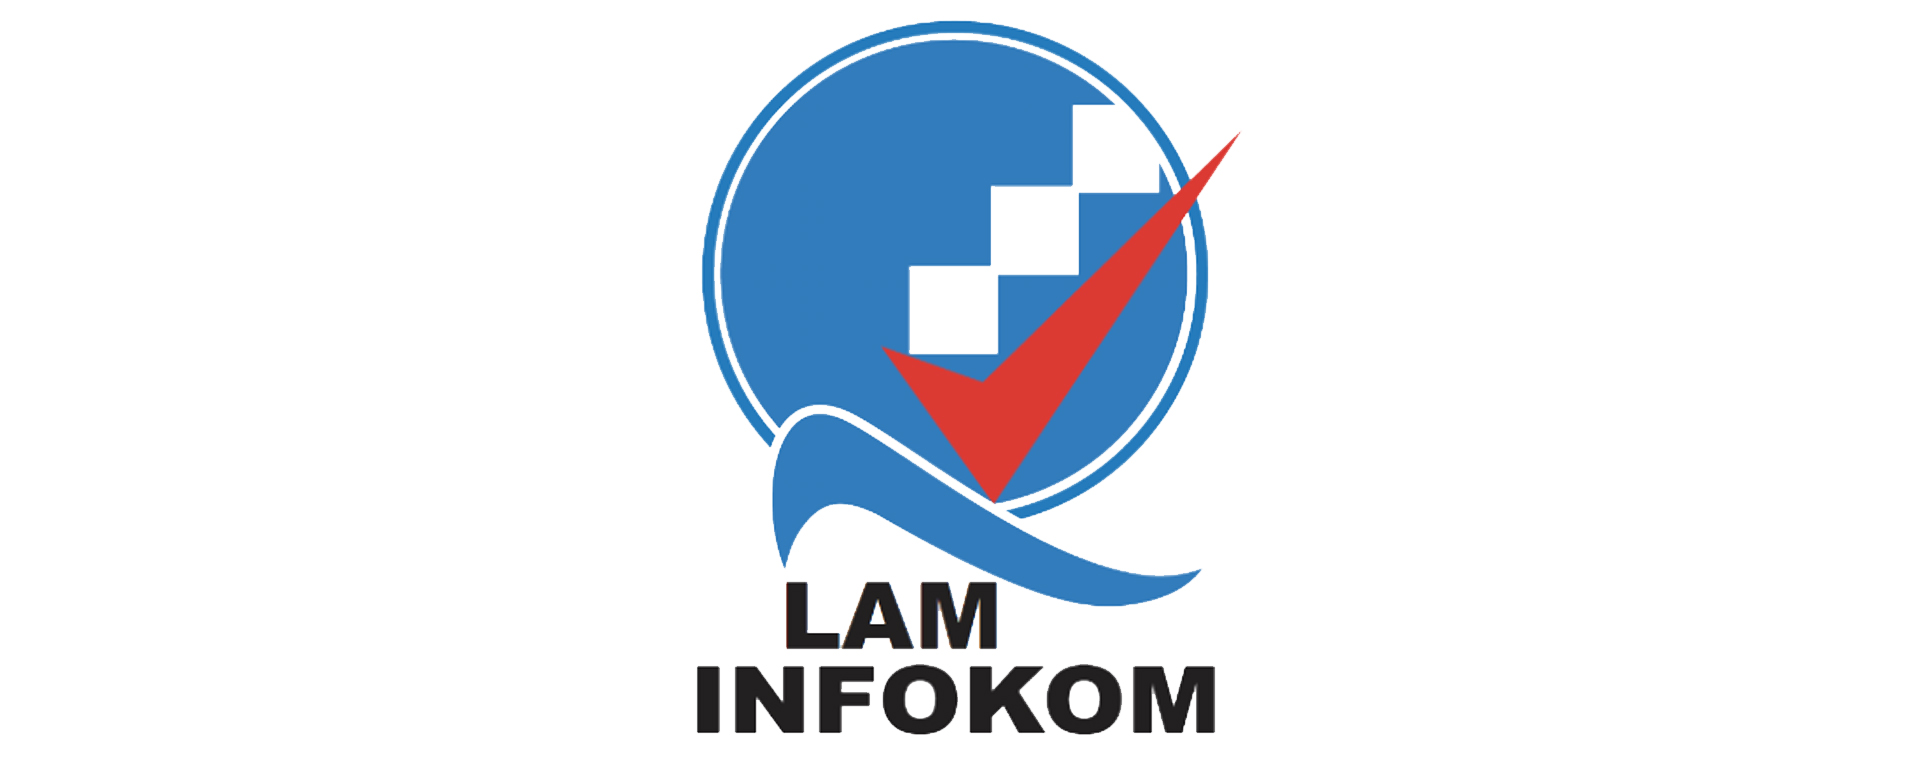 laminfokom